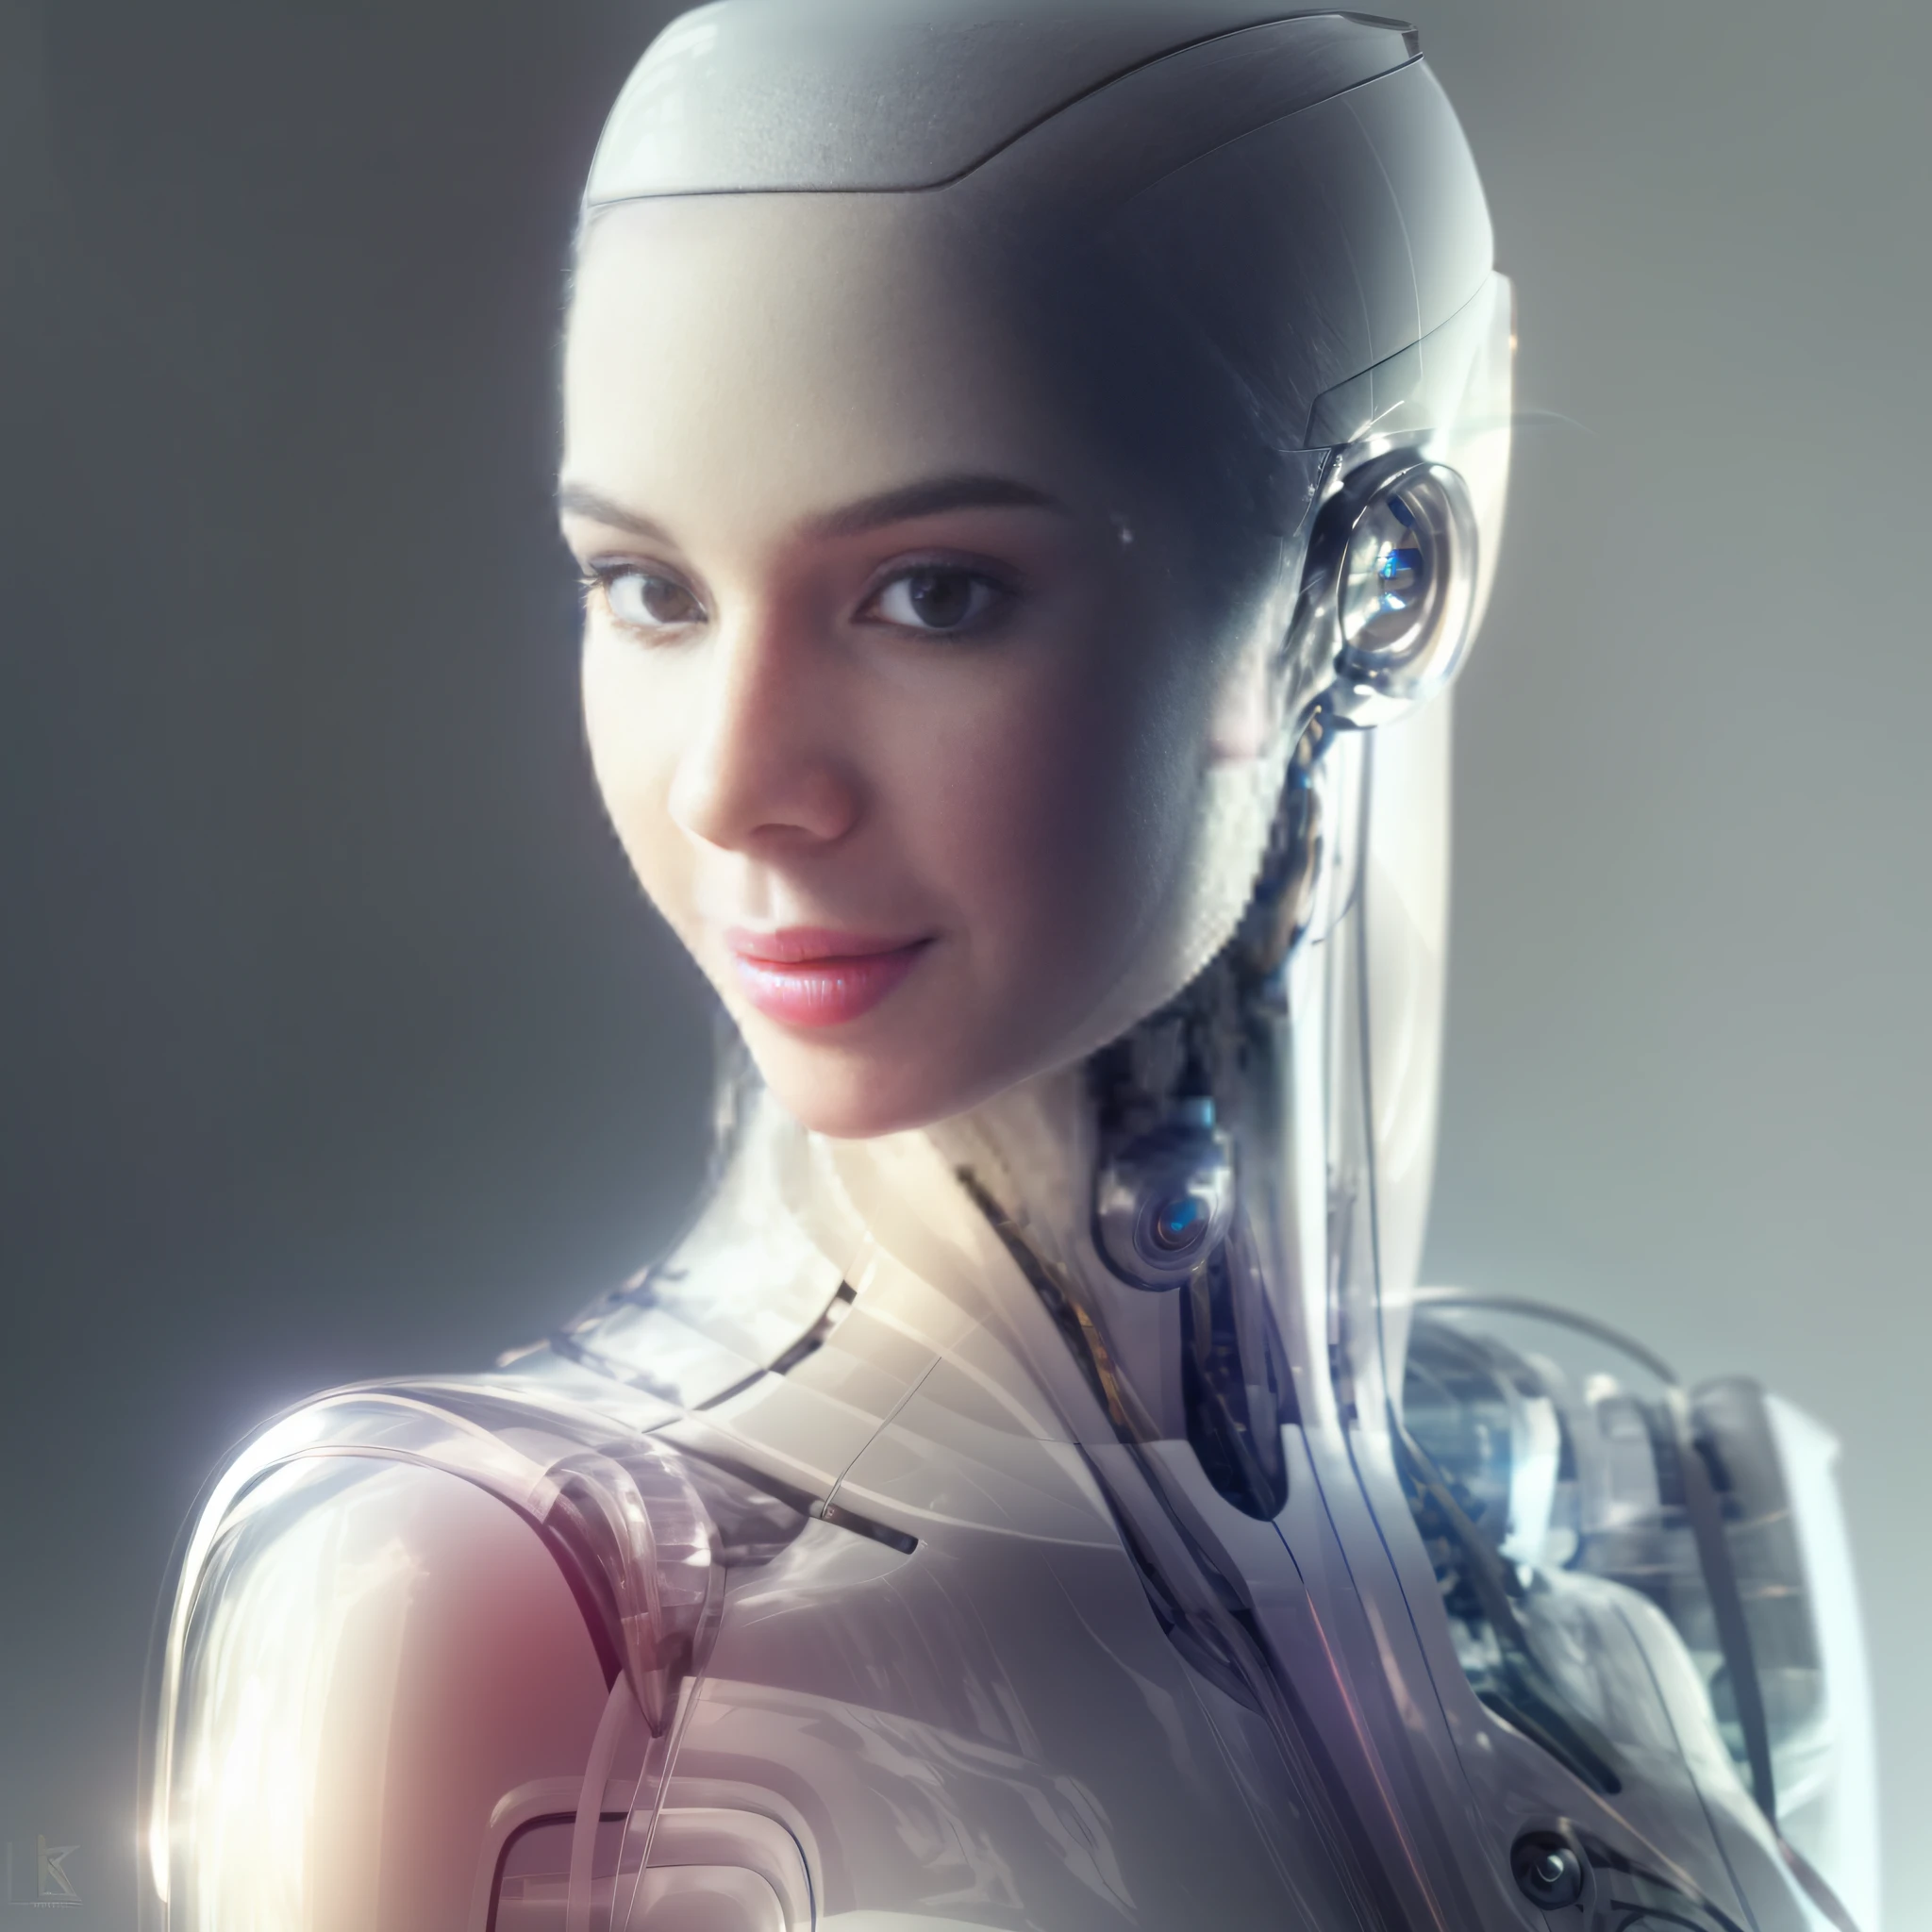 Es gibt eine Nahaufnahme eines Roboters mit einem futuristischen Kopf und einem transparenten Acryl-Outfit, Roboter Femnia sinnliches Modell, integrierter synthetischer Android, cyborg - girl, portrait of a weiblicher Androide, schöne Androidin, perfektes Android-Mädchen, cyborg girl, weiblicher Androide, humanoide Frau, weiblicher Roboter, cute weiblicher Androide, cyborg woman, komplizierte transhumane, ultra detailed weiblicher Androide,  Portrait of an android, schönes weißes Cyborg-Mädchen, fAshion photography, Ashion